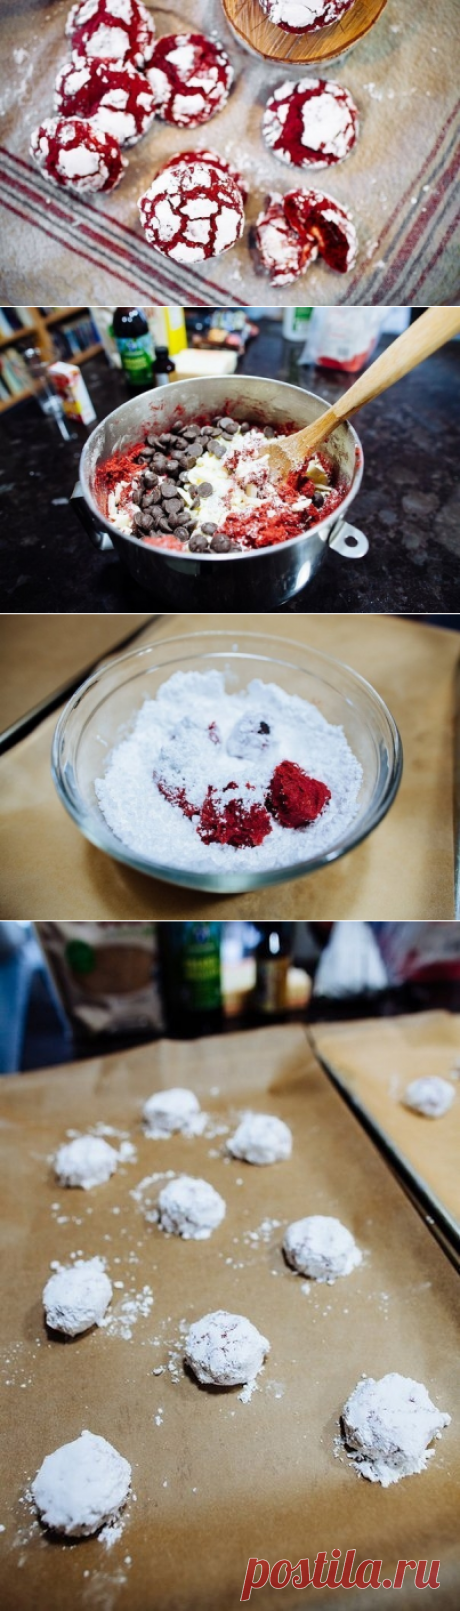 Как приготовить печенье красный бархат. - рецепт, ингридиенты и фотографии